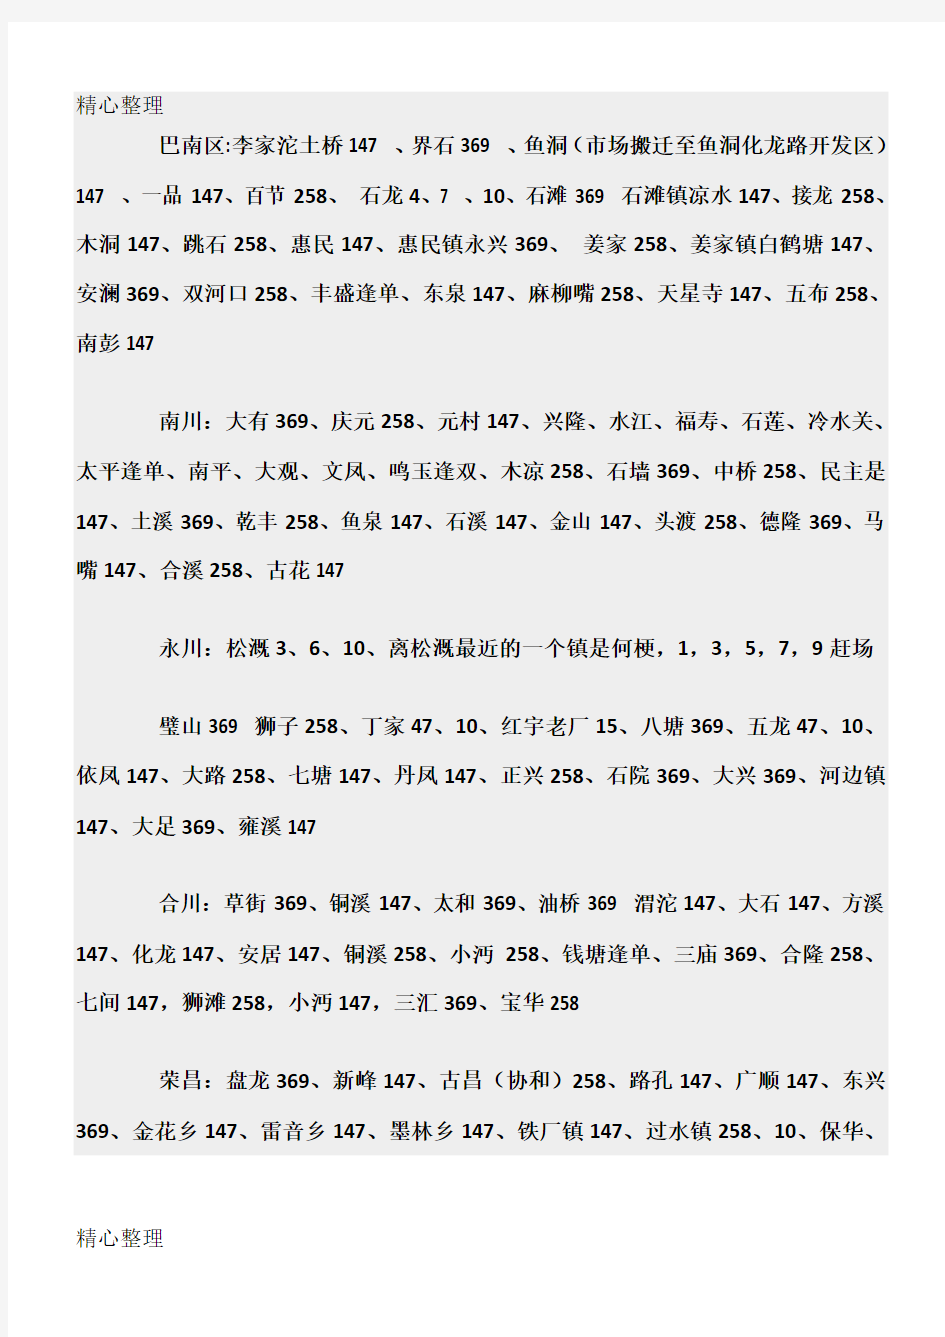 重庆周边乡镇赶场时间表